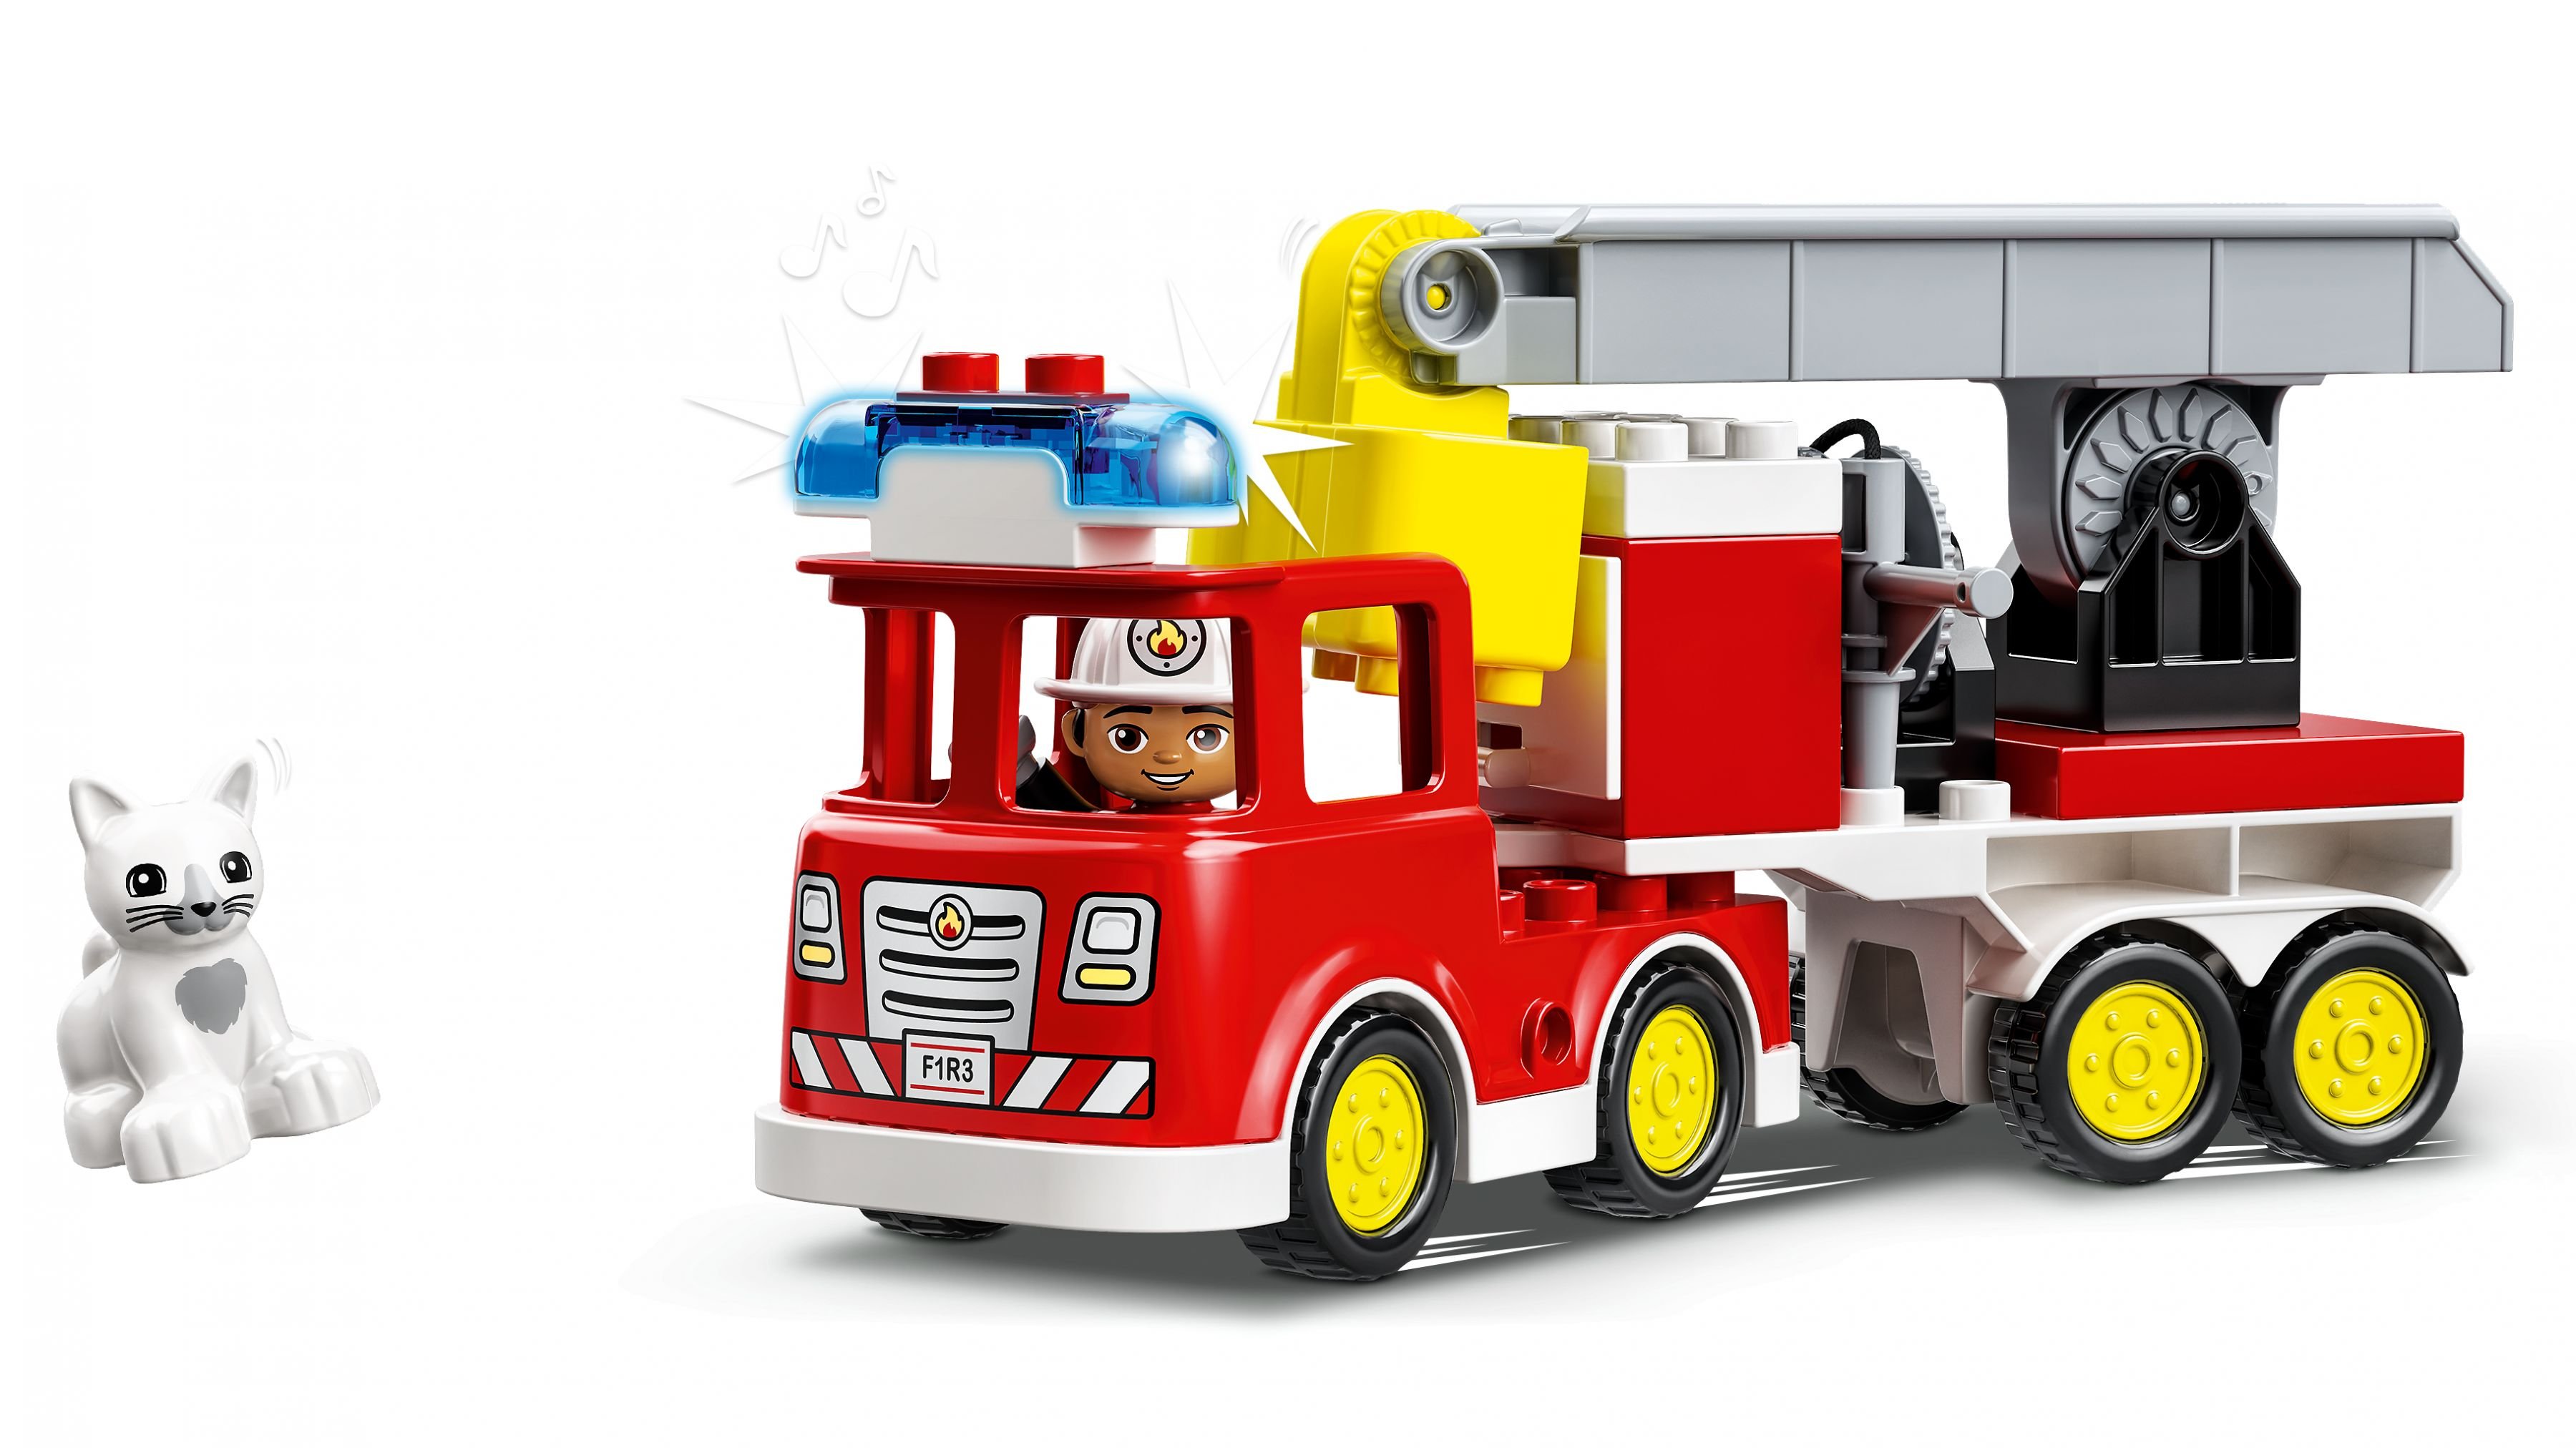 LEGO Duplo 10969 Feuerwehrauto LEGO_10969_WEB_SEC01_NOBG.jpg